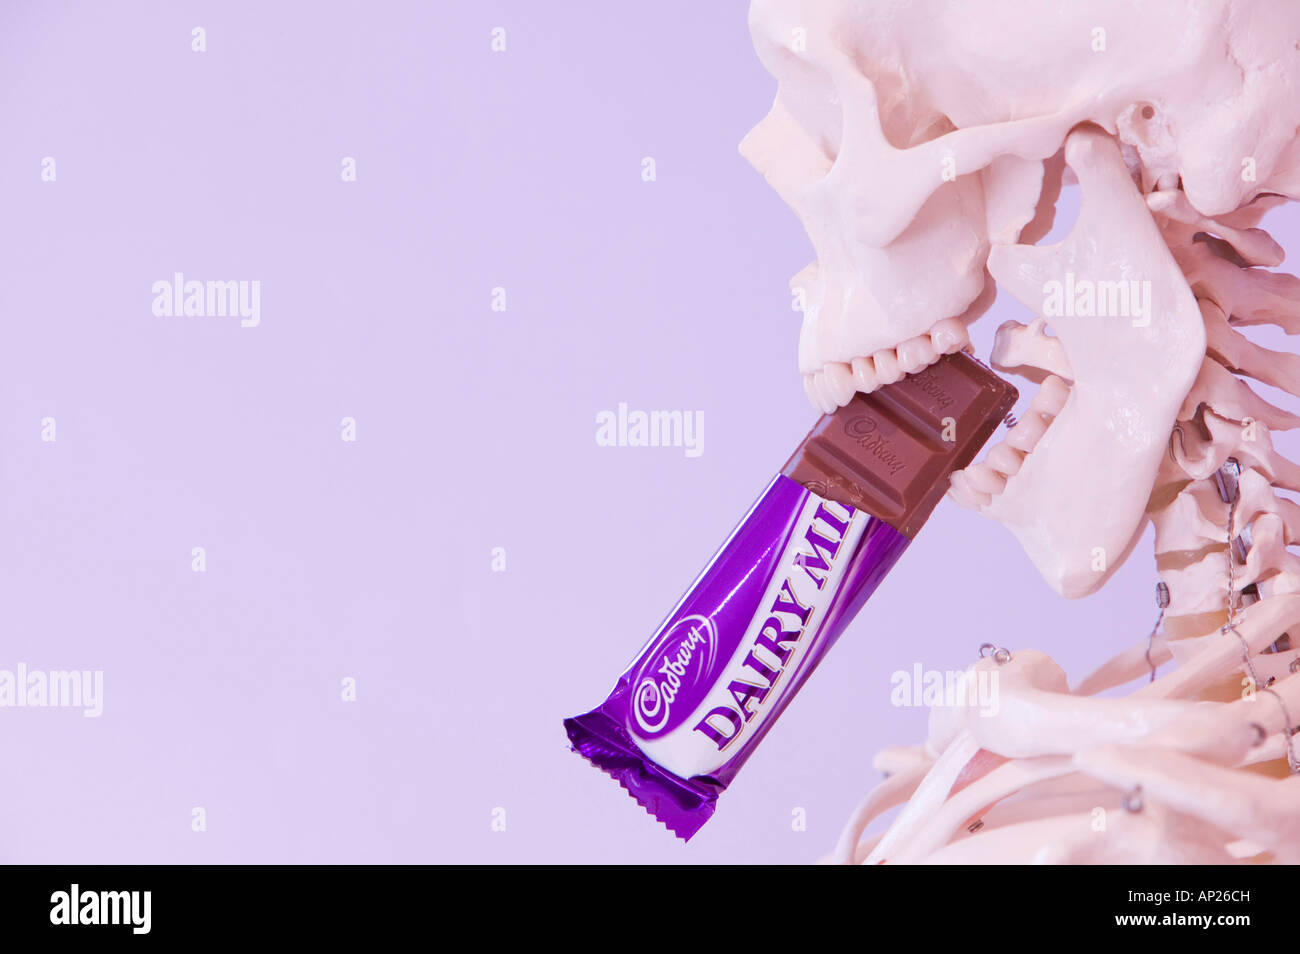 Uno scheletro umano a mangiare una barretta di cioccolato Foto Stock